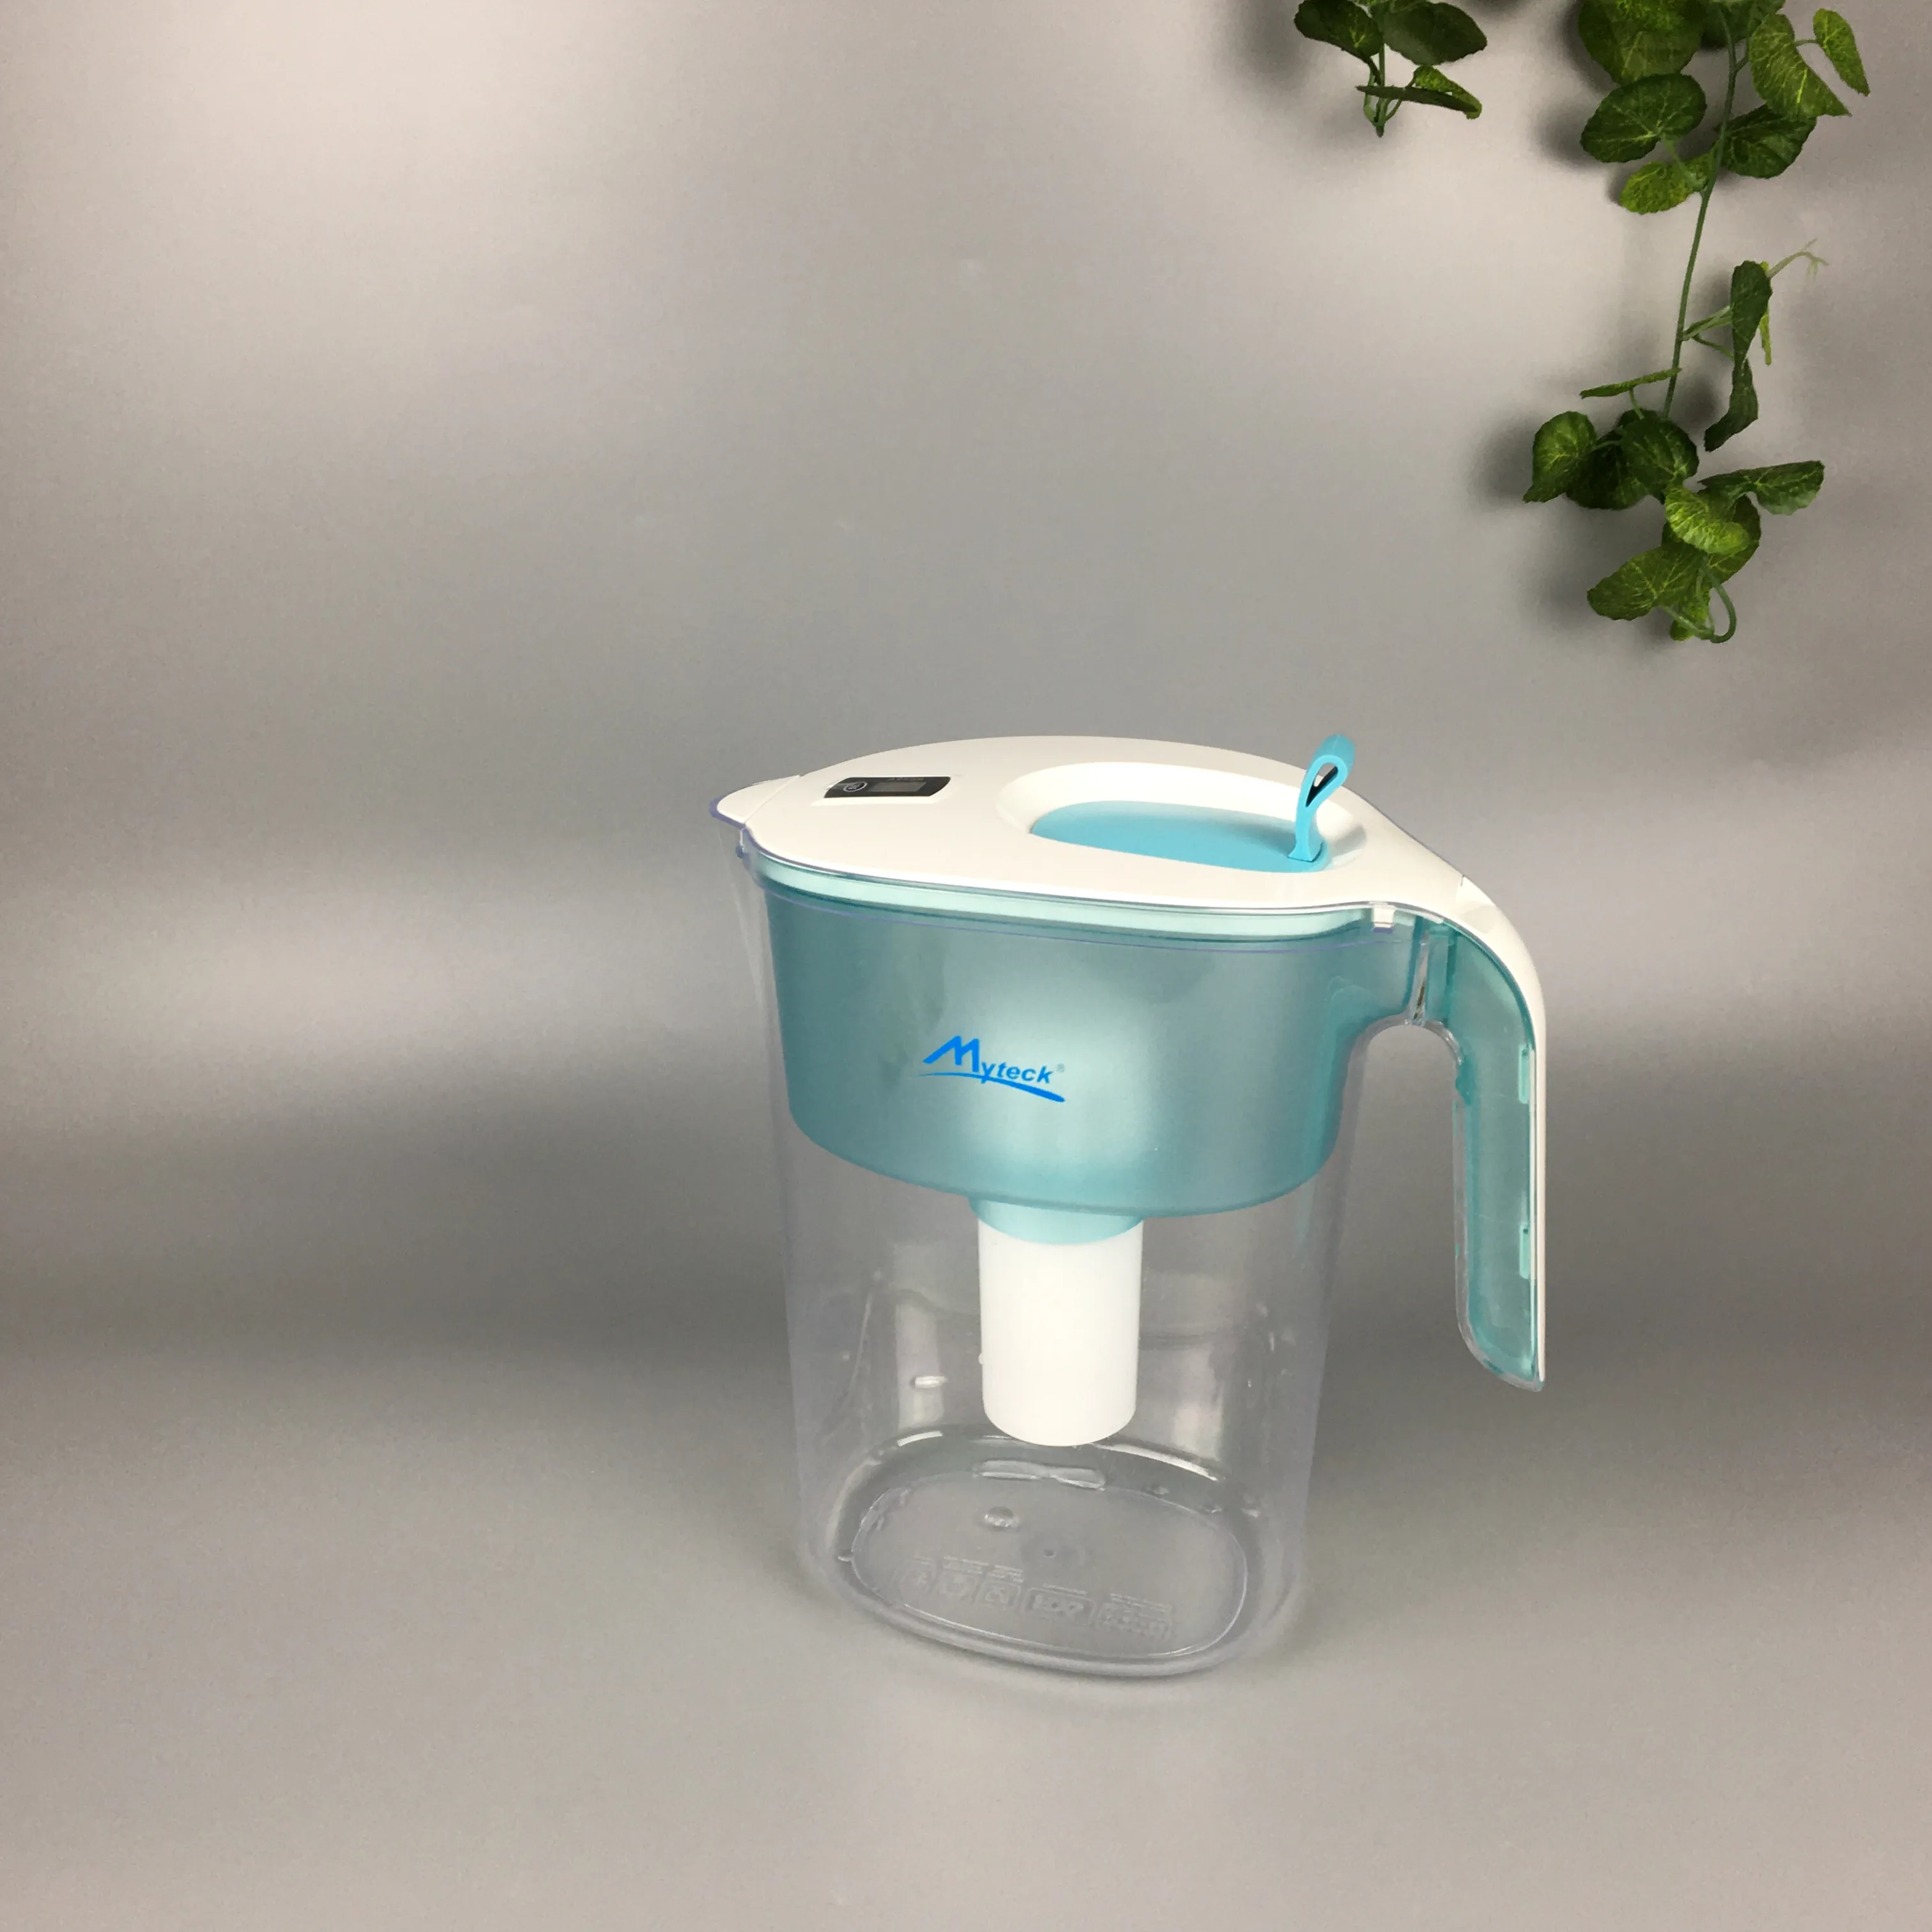 Myteck مبتكرة 4.2L إبريق ماء تنقية مباشرة صالحة للشرب الحلو لينة المياه القاذف تصفية البكتيريا إزالة 99.99% للمنزل